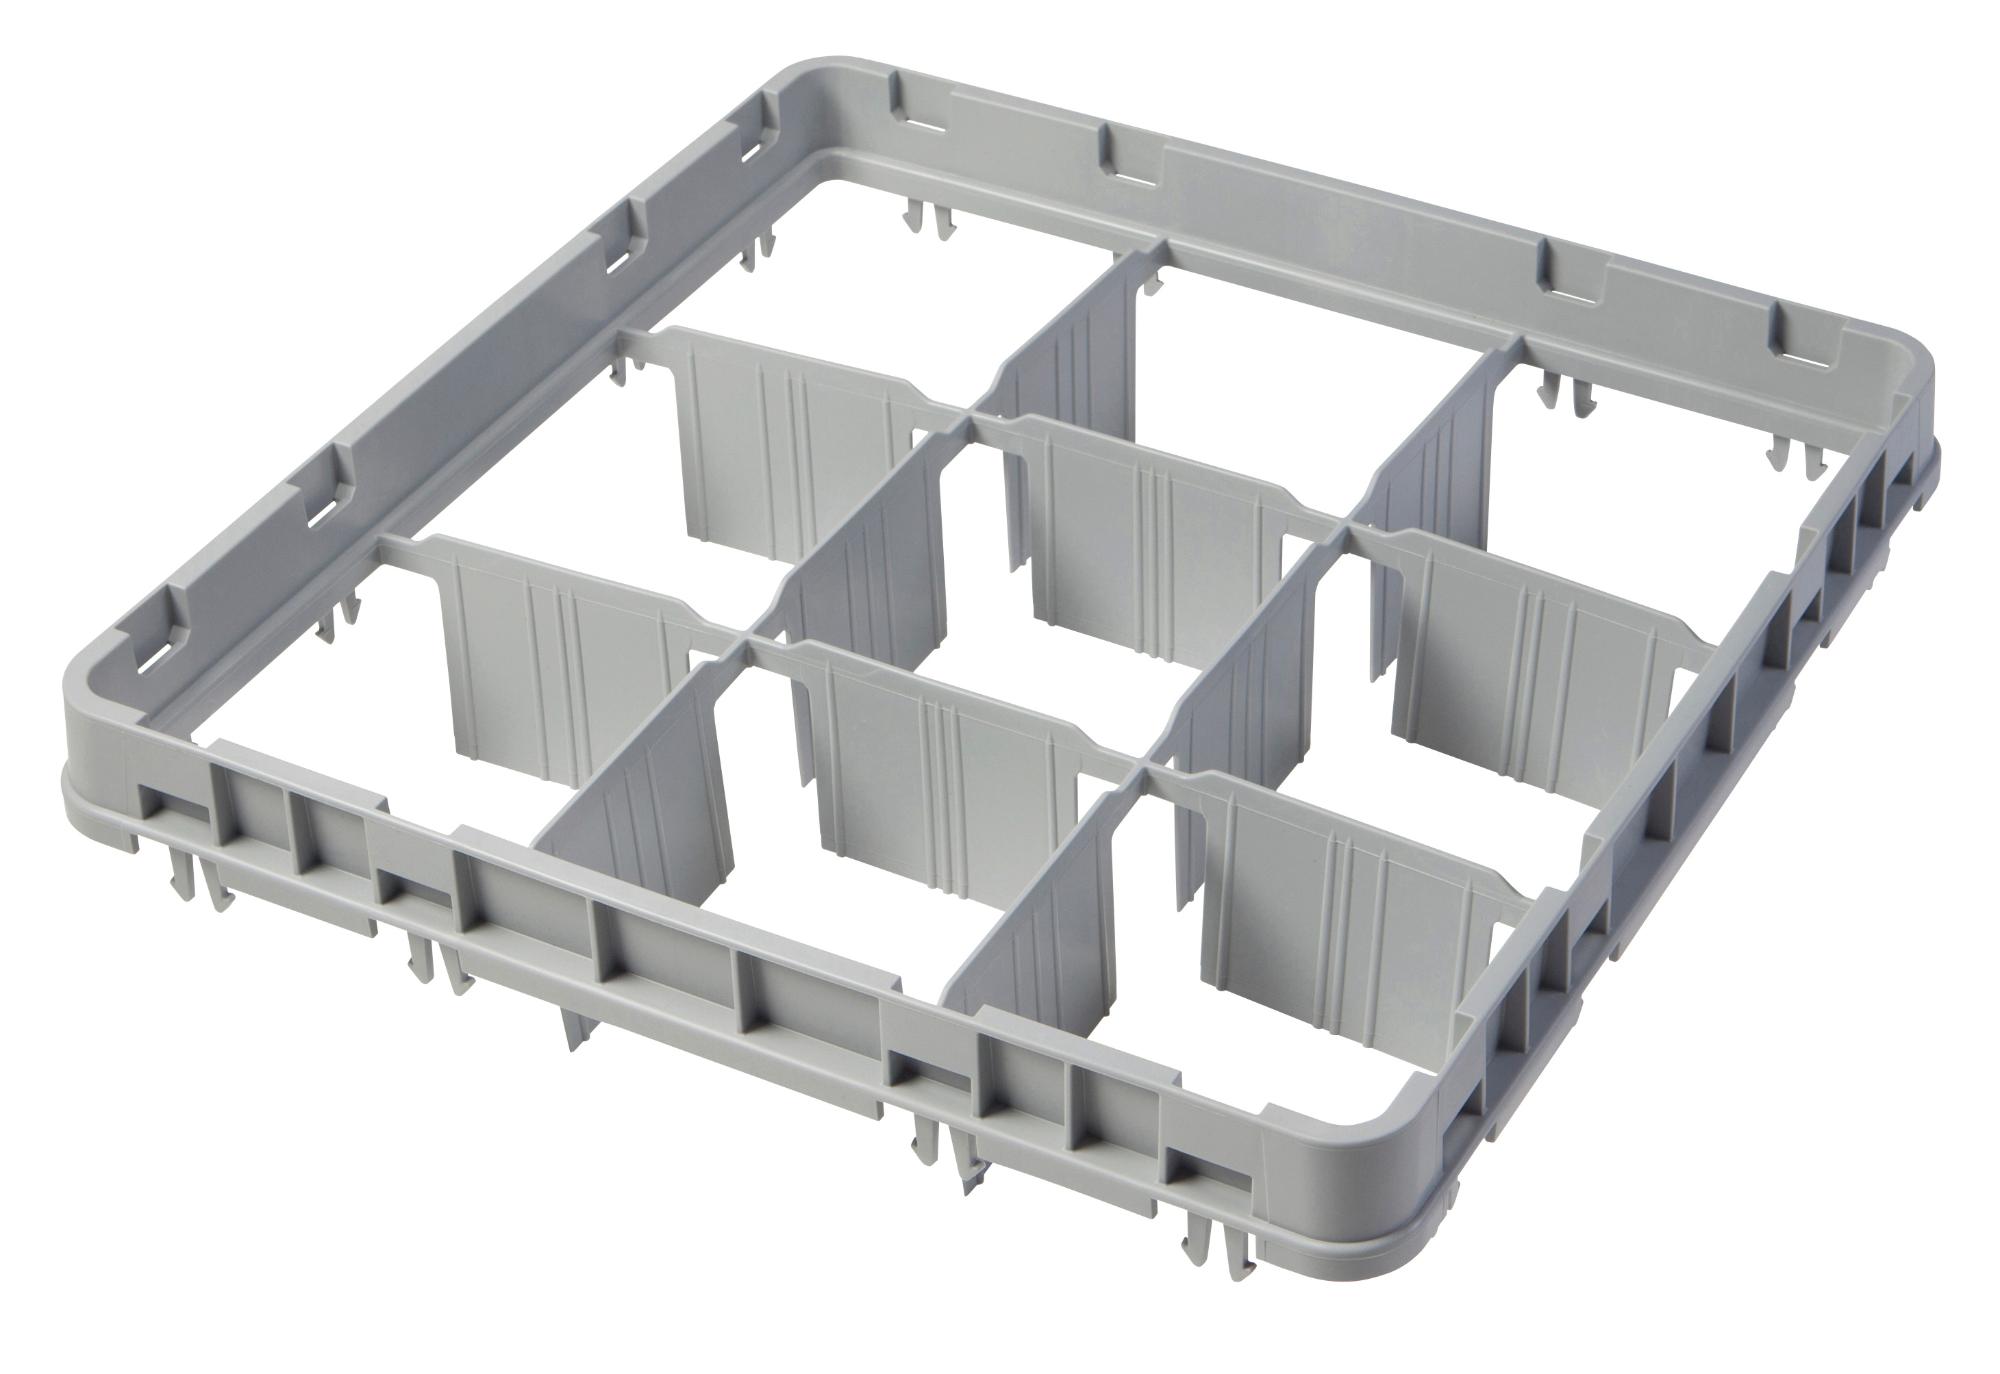 Full drop rack extender 500×500 mm grey, E1 model, 9 compartment